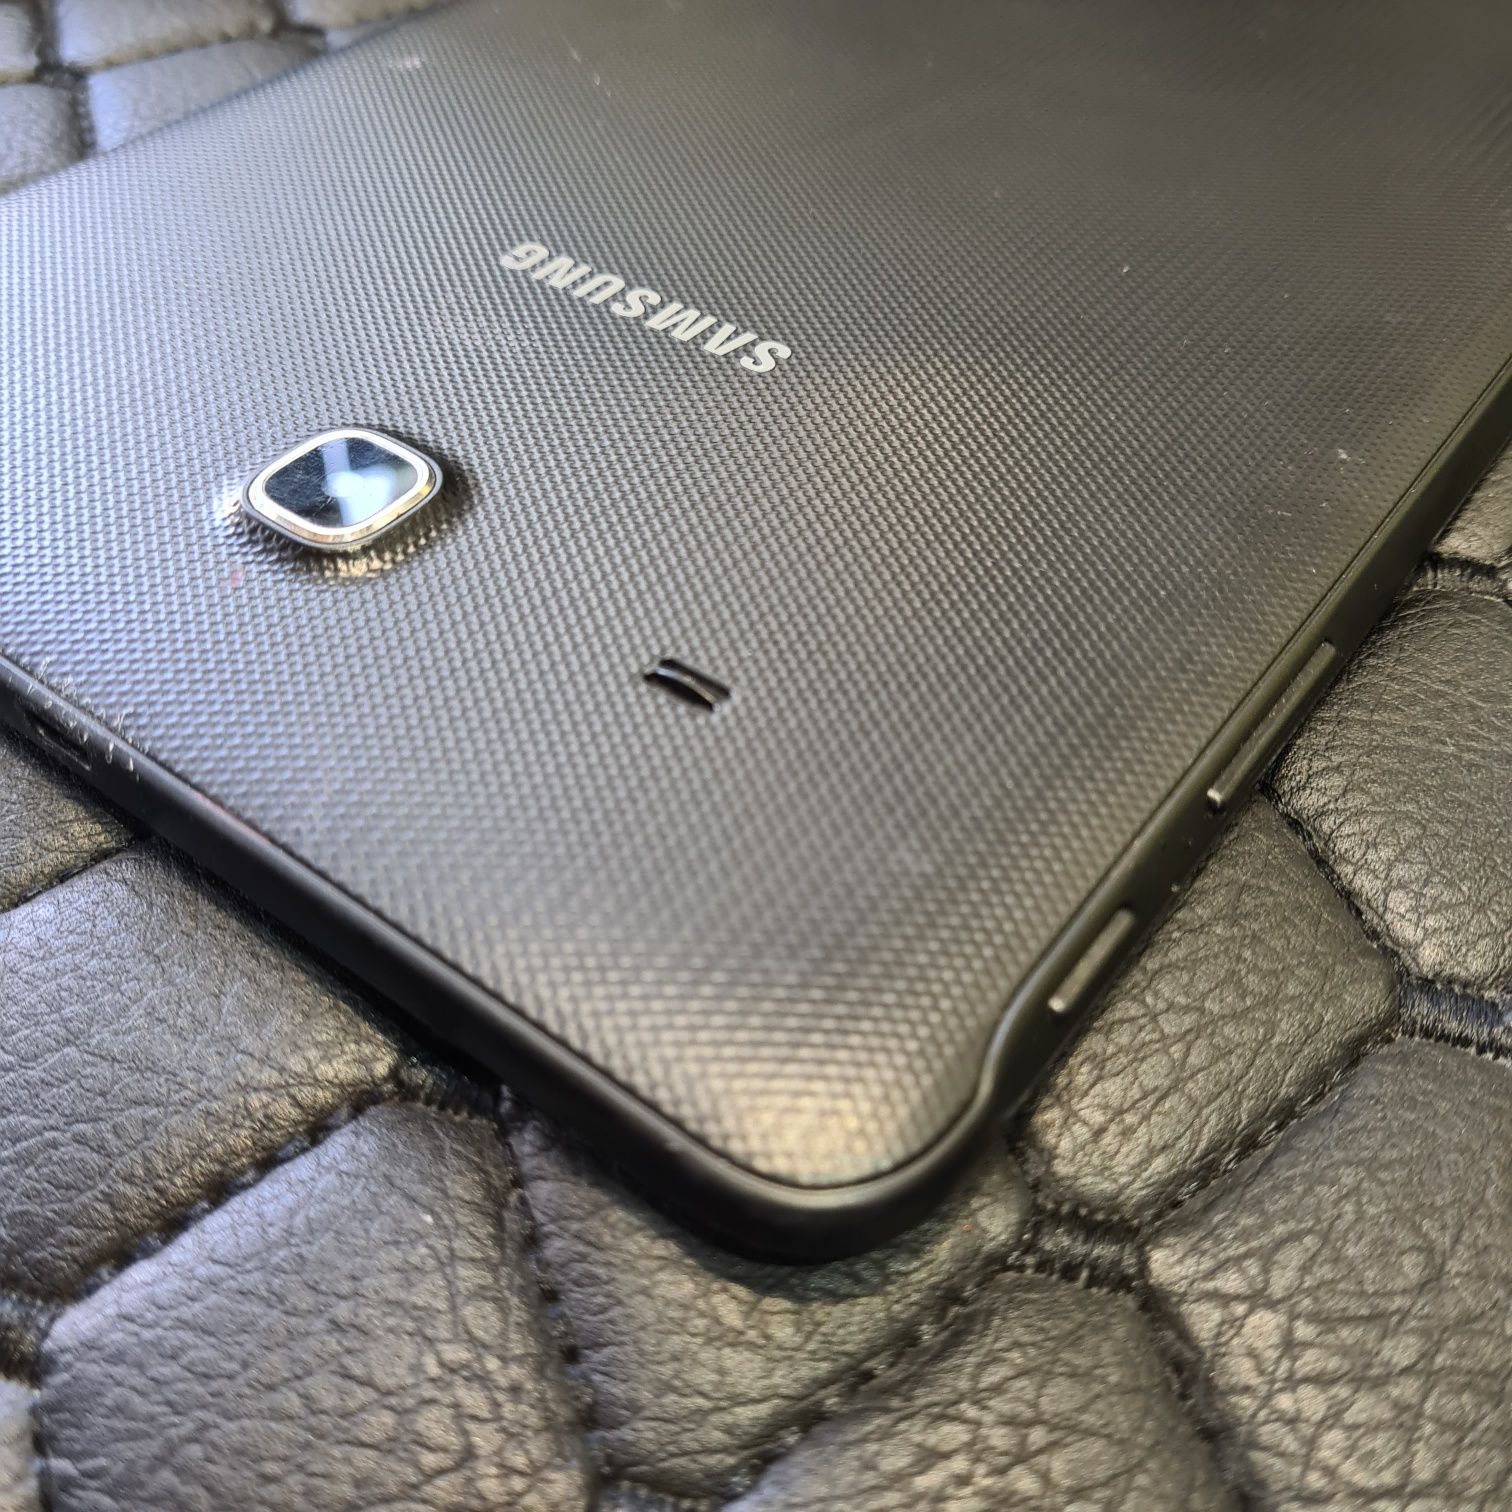 Samsung Galaxy Tab E 9.6 3G (SM-T561) 8GB, черен цвят